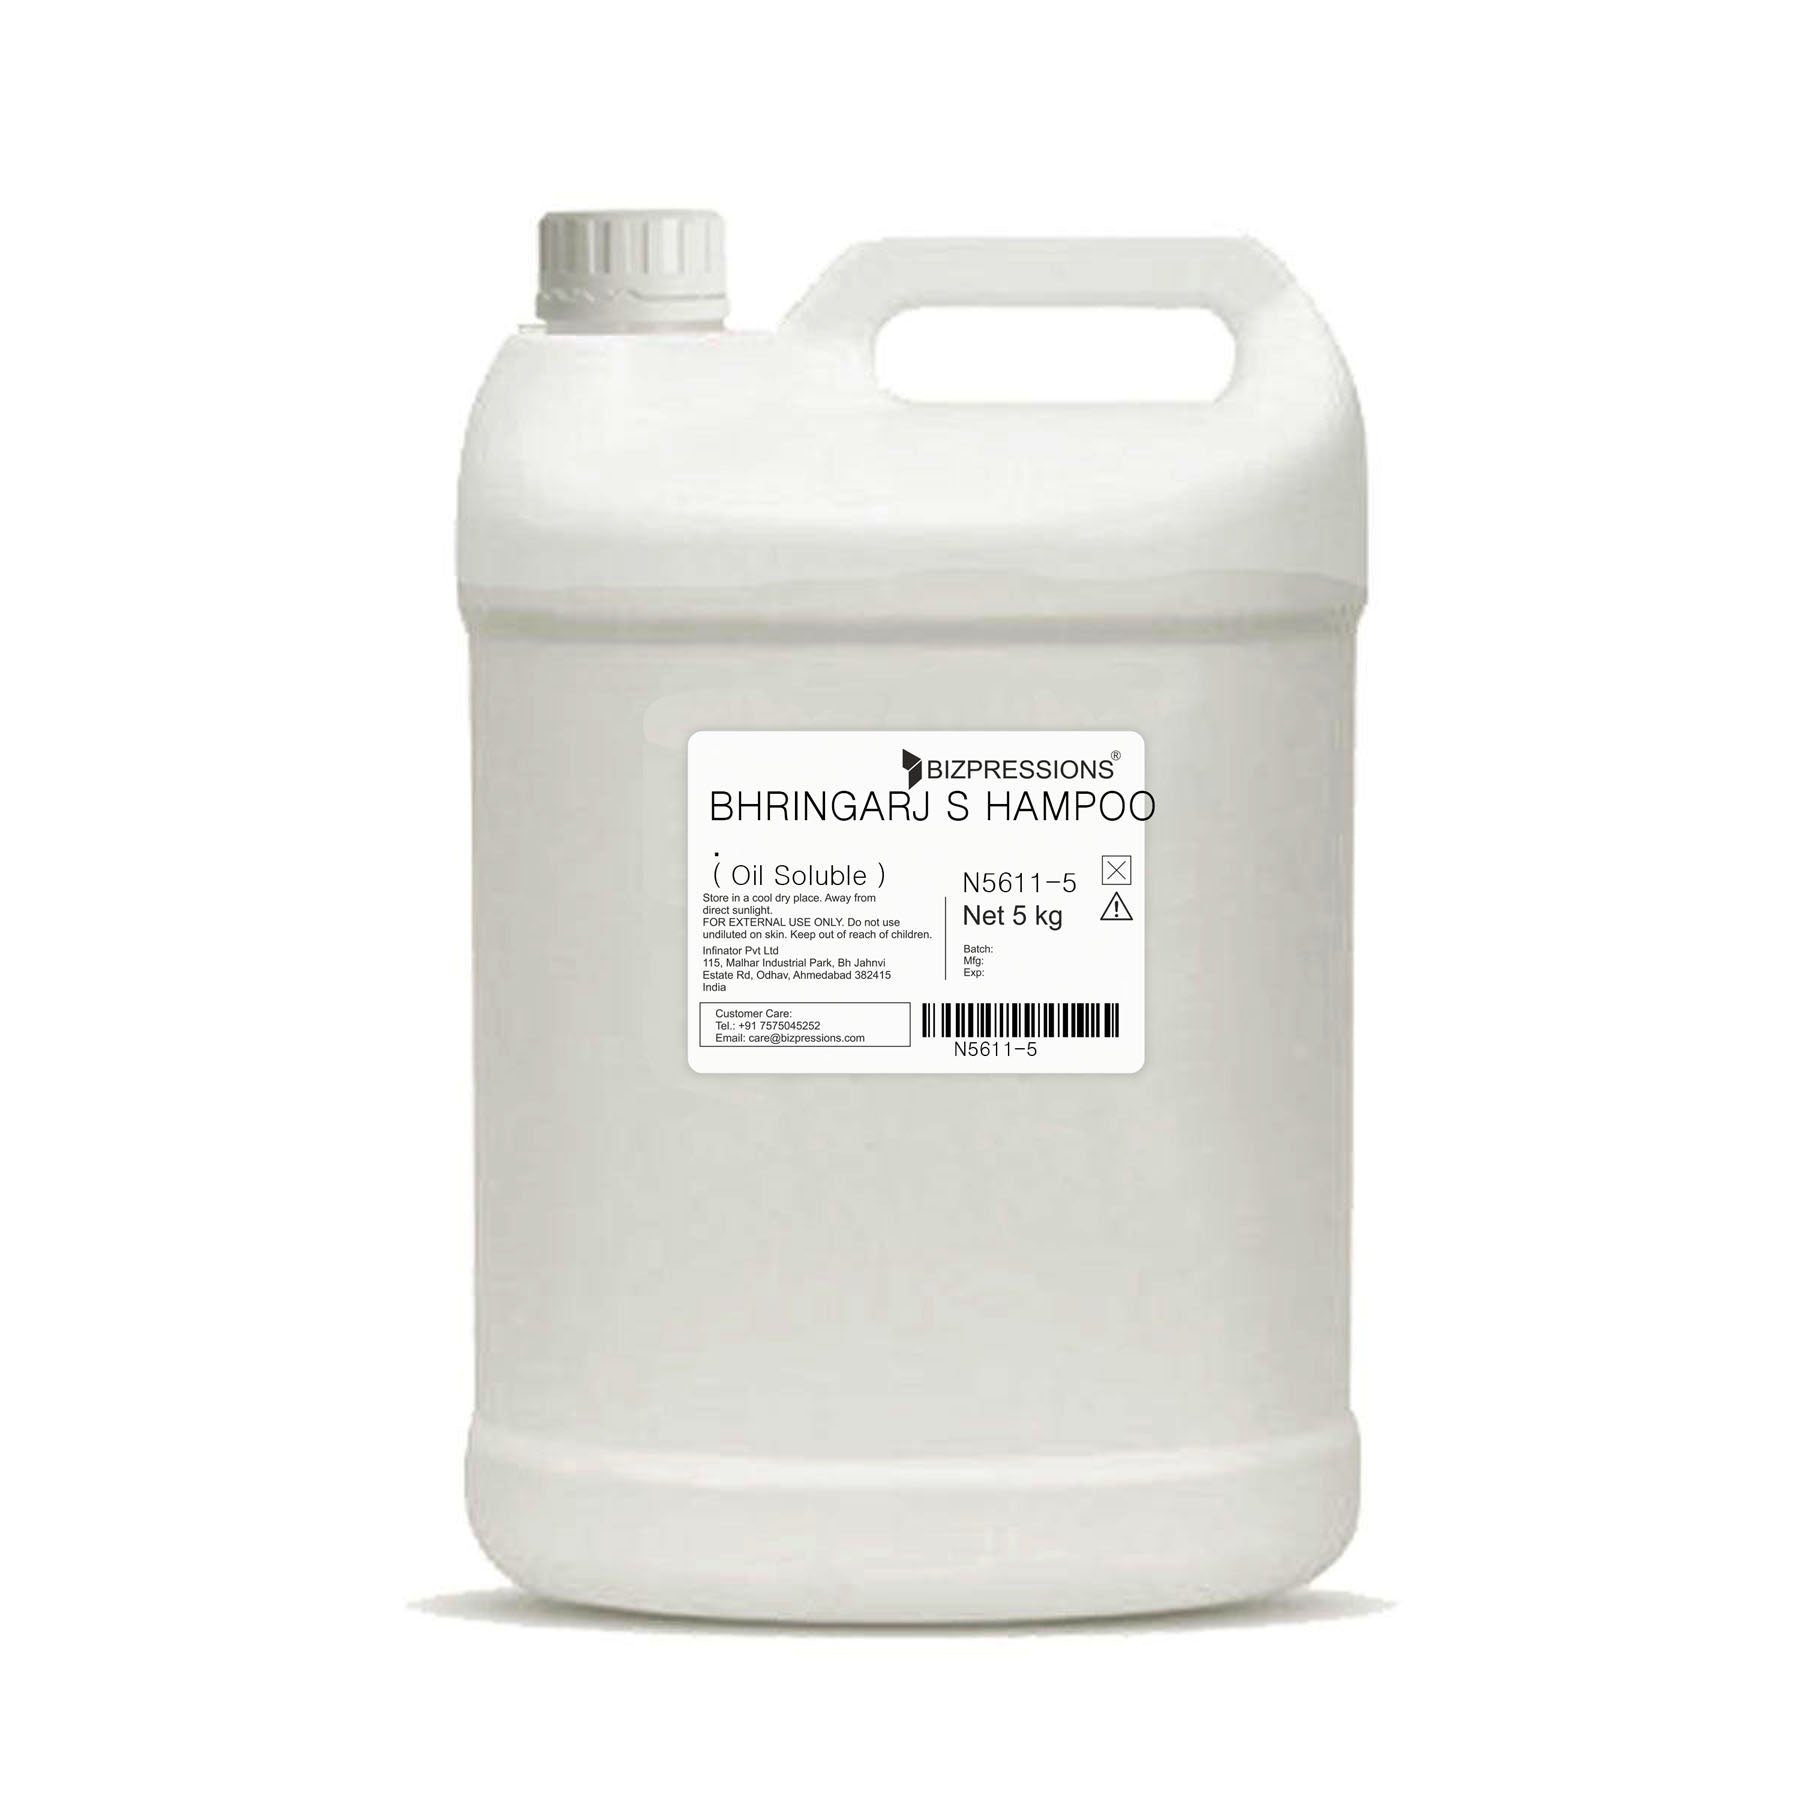 BHRINGARJ SHAMPOO - Fragrance ( Oil Soluble ) - 5 kg